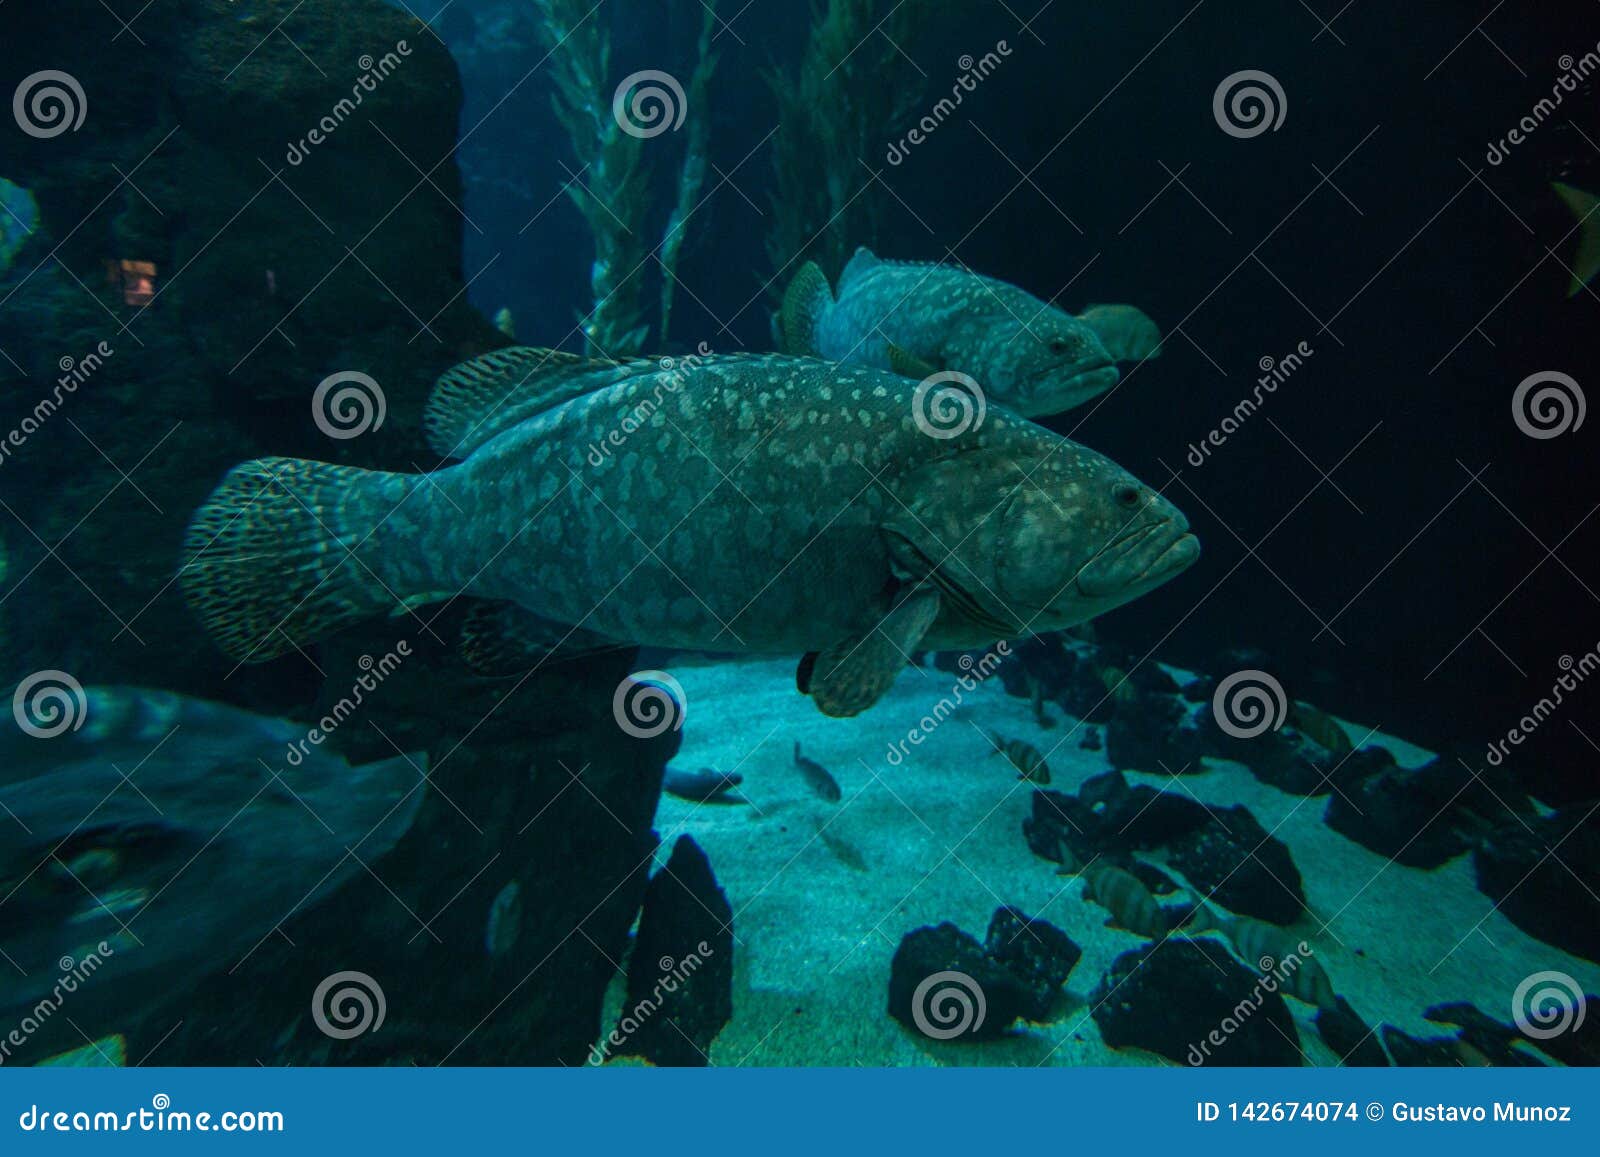 a grouper epinephelus marginatus swimming in an aquarium in the foreground